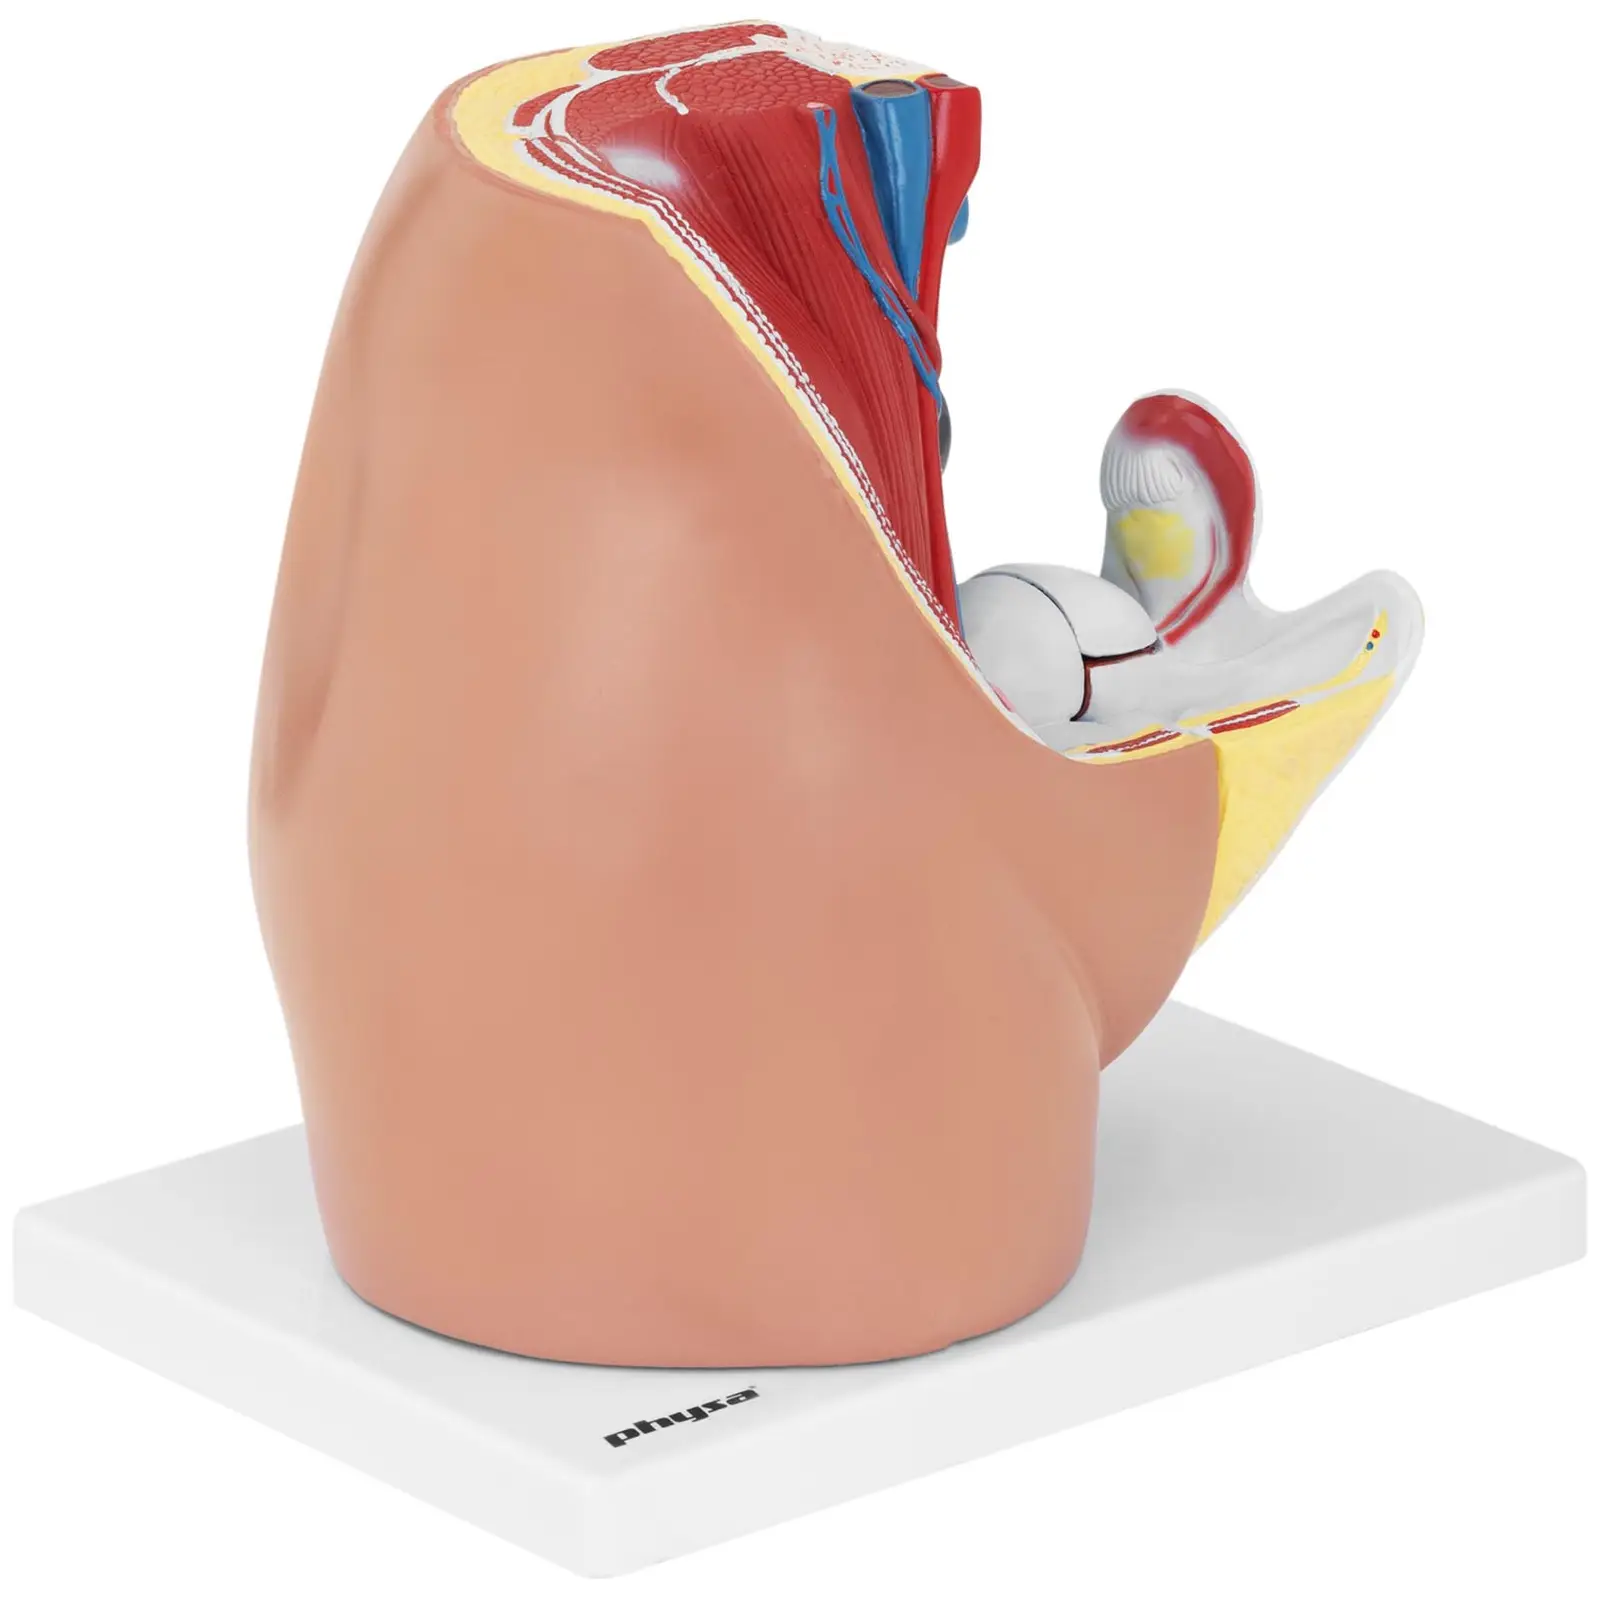 Anatominen malli - lantio - nainen - jakautuu 3 osaan - luonnollinen koko